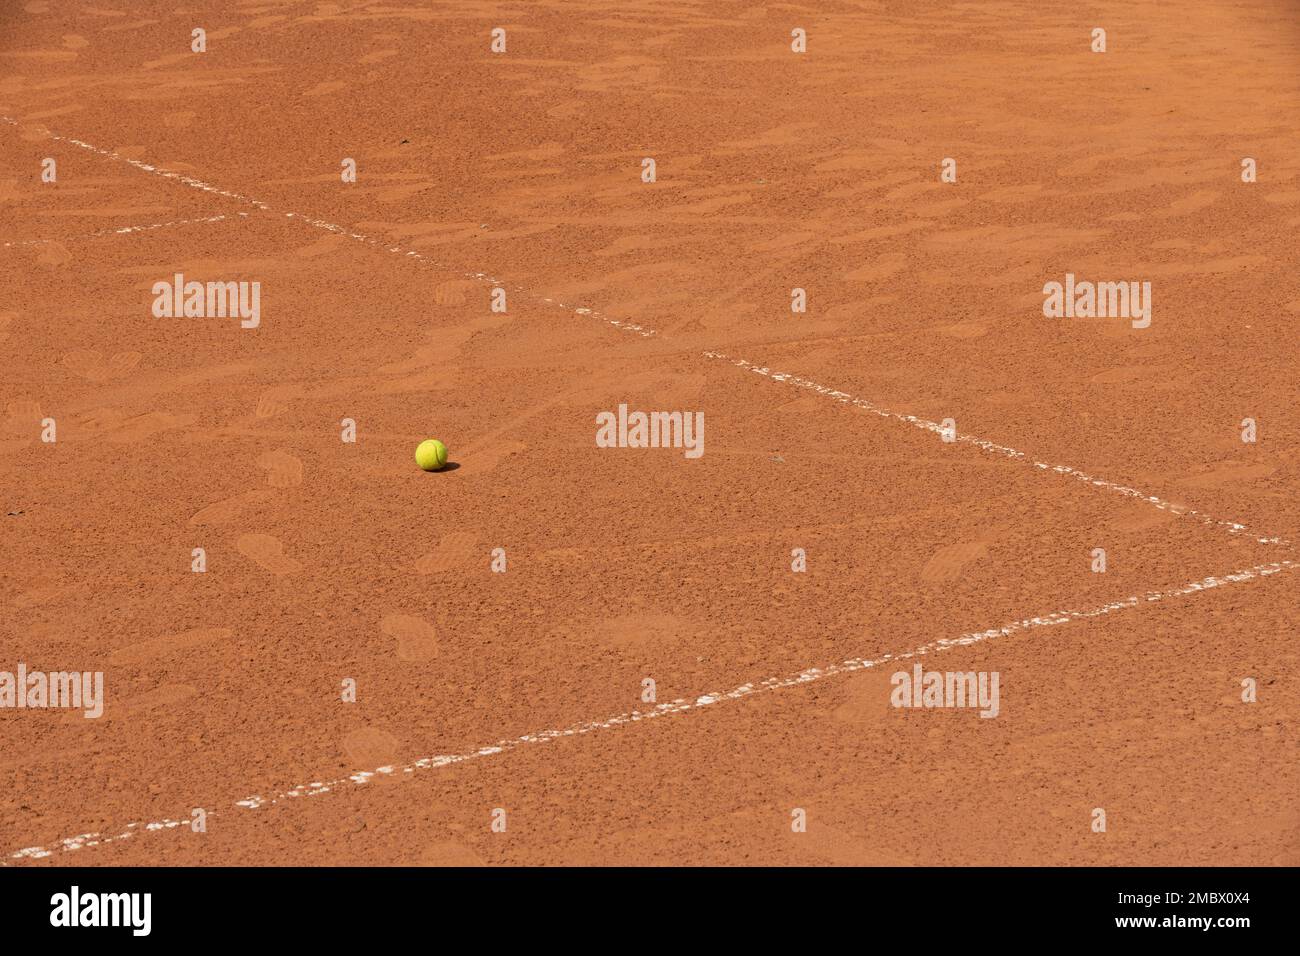 campo da tennis in argilla rossa con palla gialla e strisce bianche Foto Stock